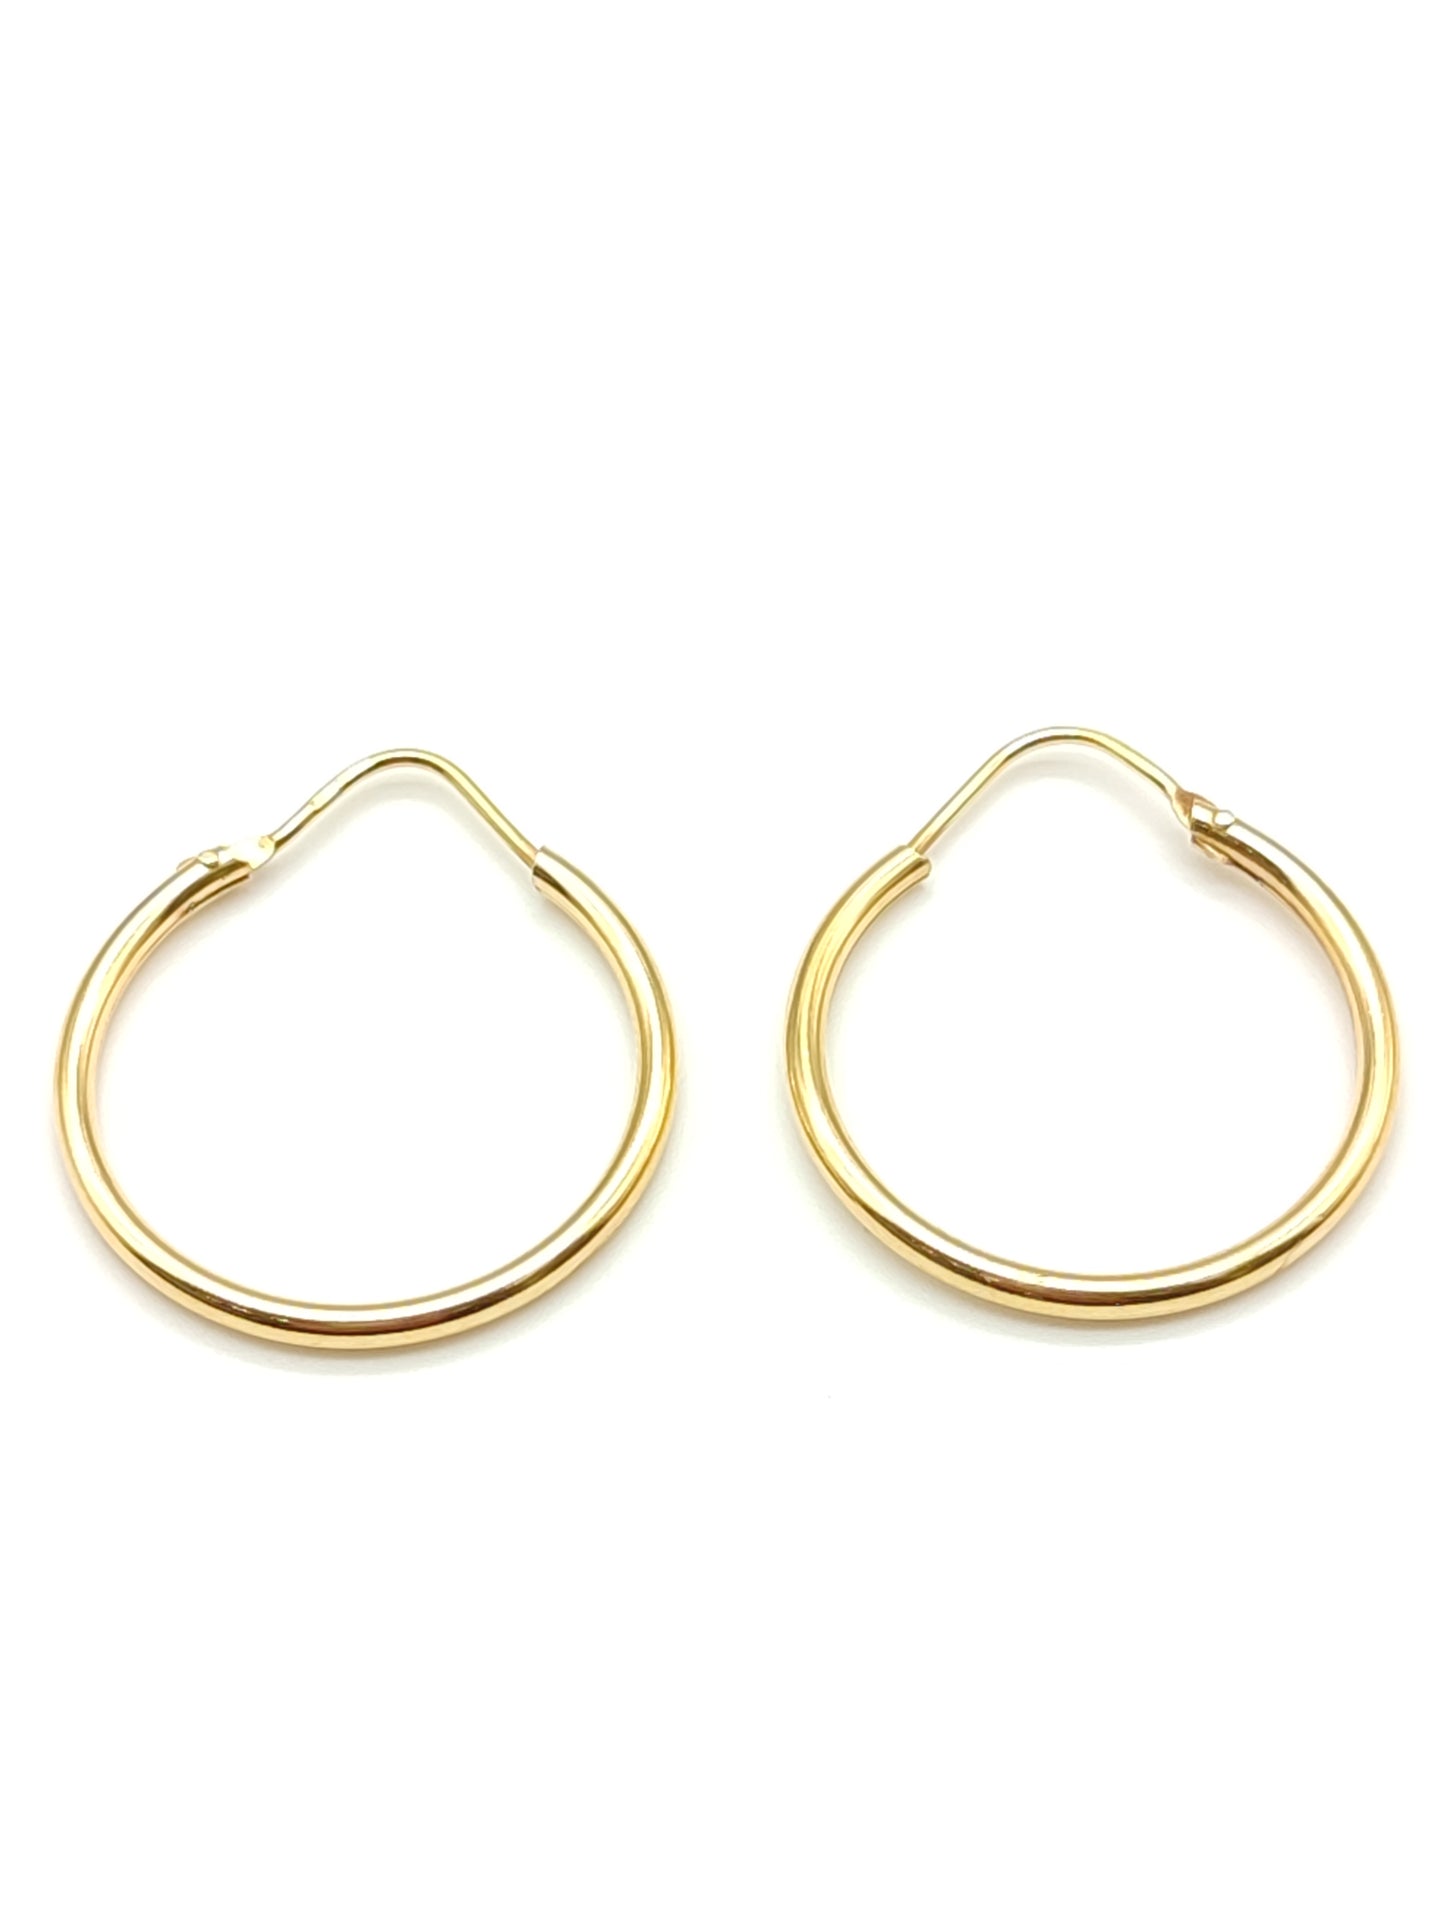 Gold hoop earrings diameter 2.5 cm